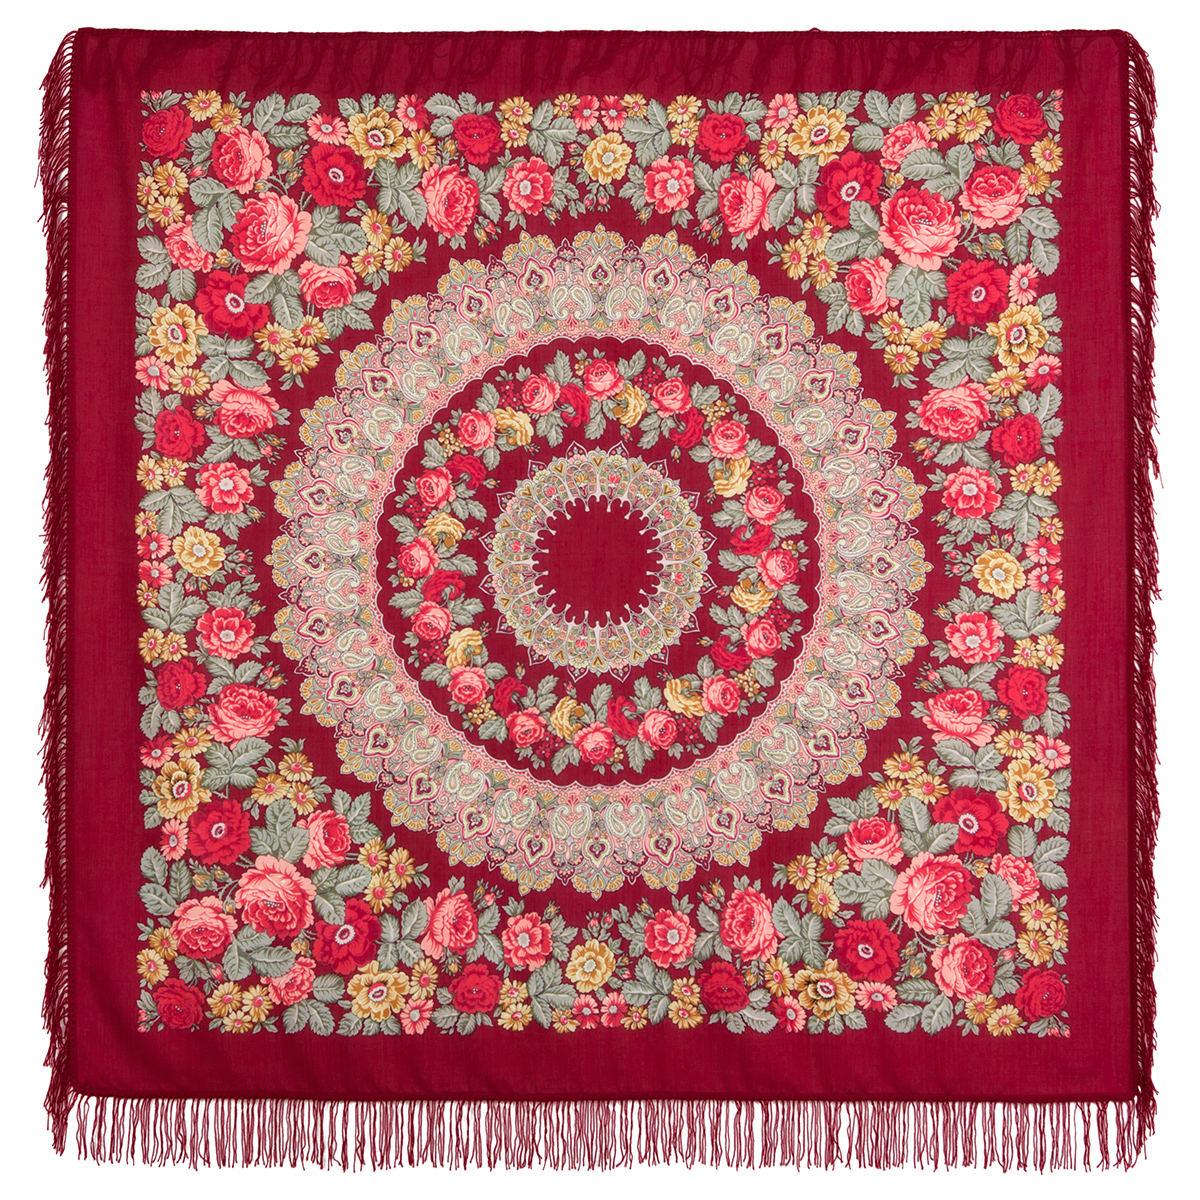 Платок женский Павловопосадский платок 353 бордовый/красный/бежевый, 146х146 см